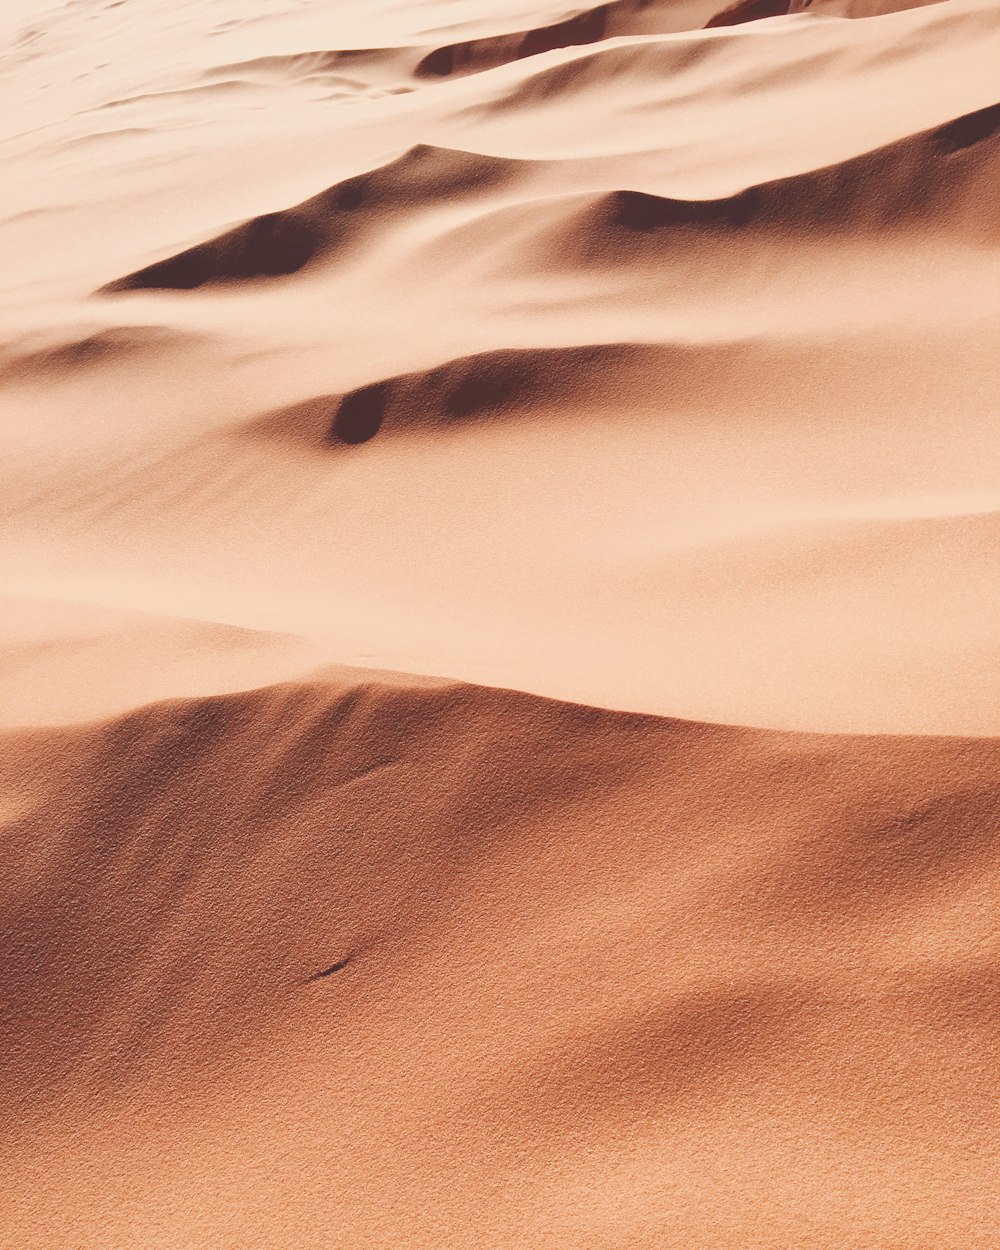 Foto di sabbia del deserto